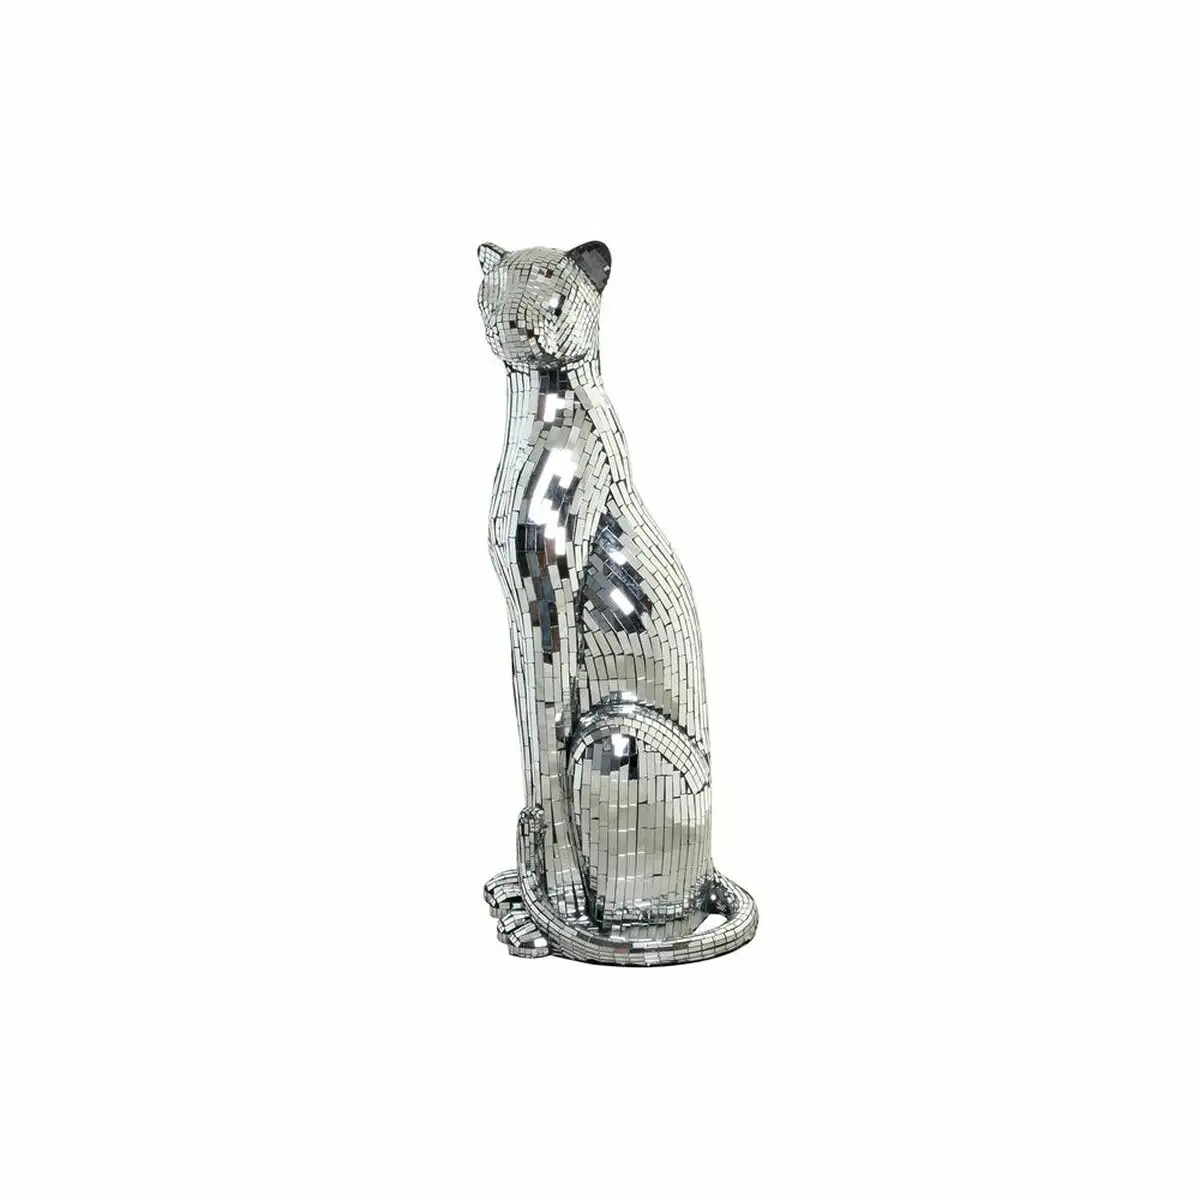 Figurine decorative dkd home decor argente leopard resine 30 x 26 x 64 5 cm _8487. Bienvenue sur DIAYTAR SENEGAL - Là où Chaque Objet a une Âme. Plongez dans notre catalogue et trouvez des articles qui portent l'essence de l'artisanat et de la passion.